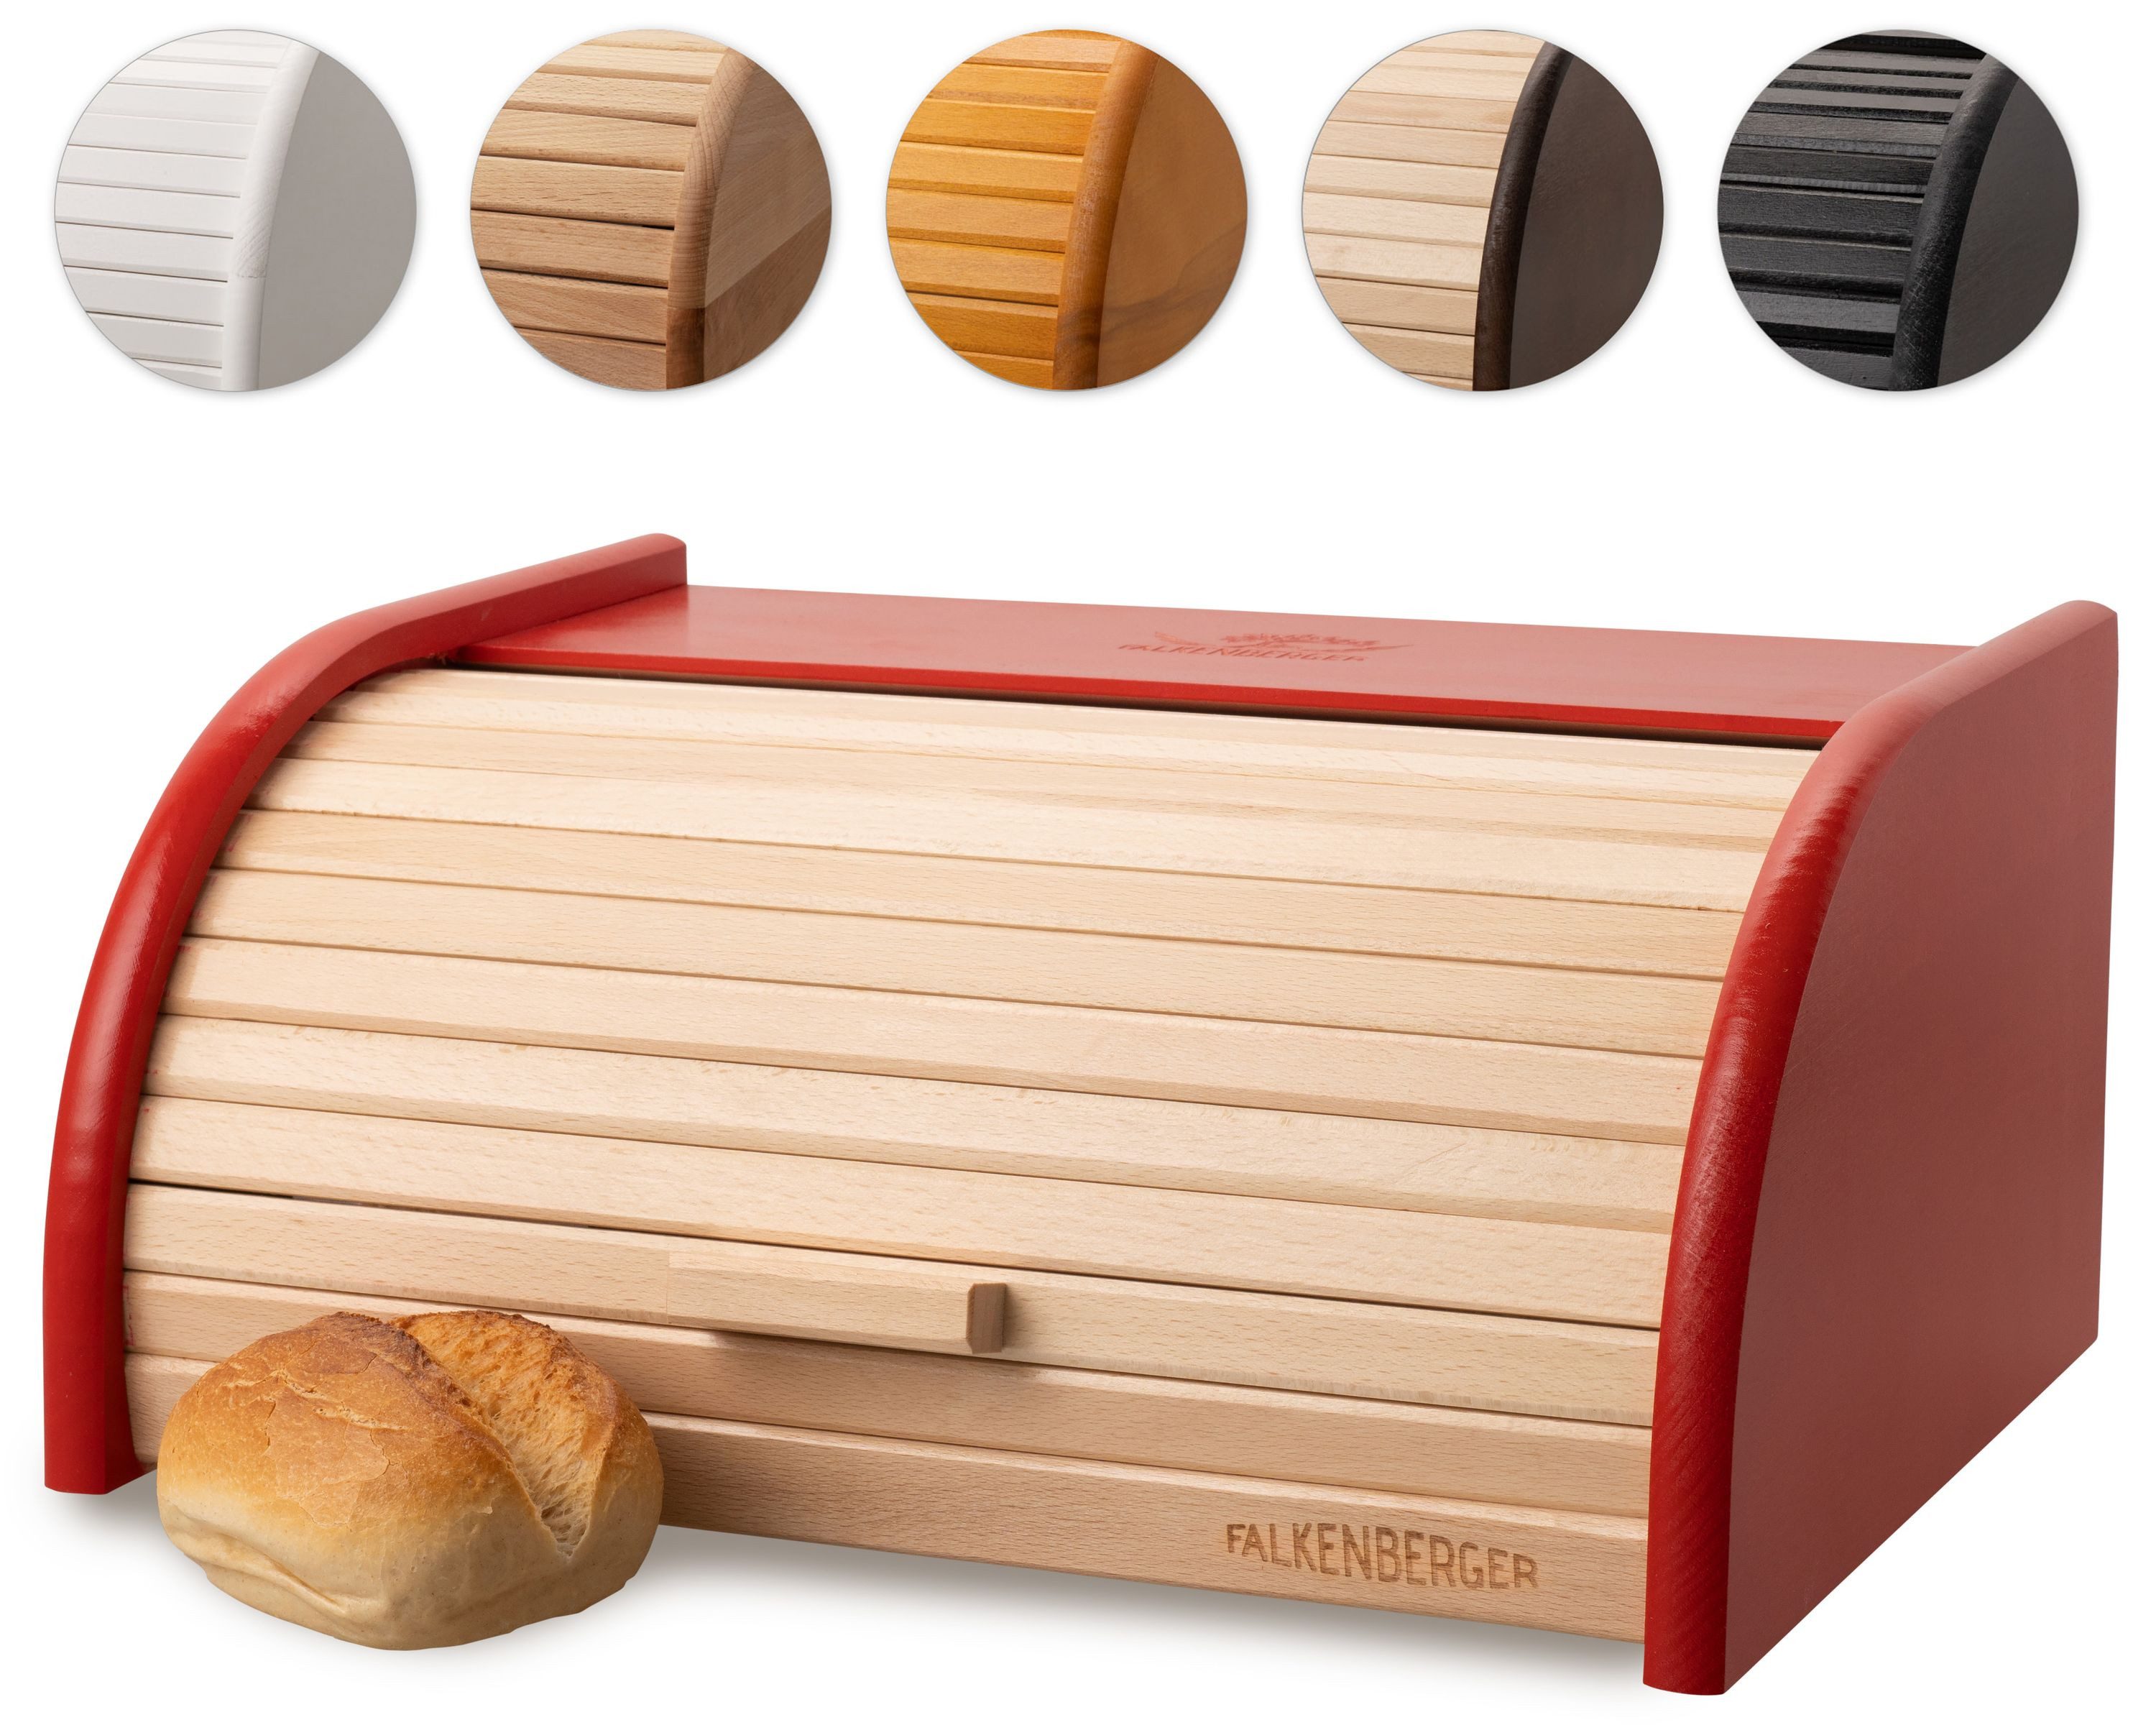 FALKENBERGER Brotkasten Brotkasten Rot 39,1x28,7x17,7cm, Holz, (1-tlg., 1 Teilig), Rollbrotkasten traditionell Brotbox mit Roll-Deckel für Brot Handmade